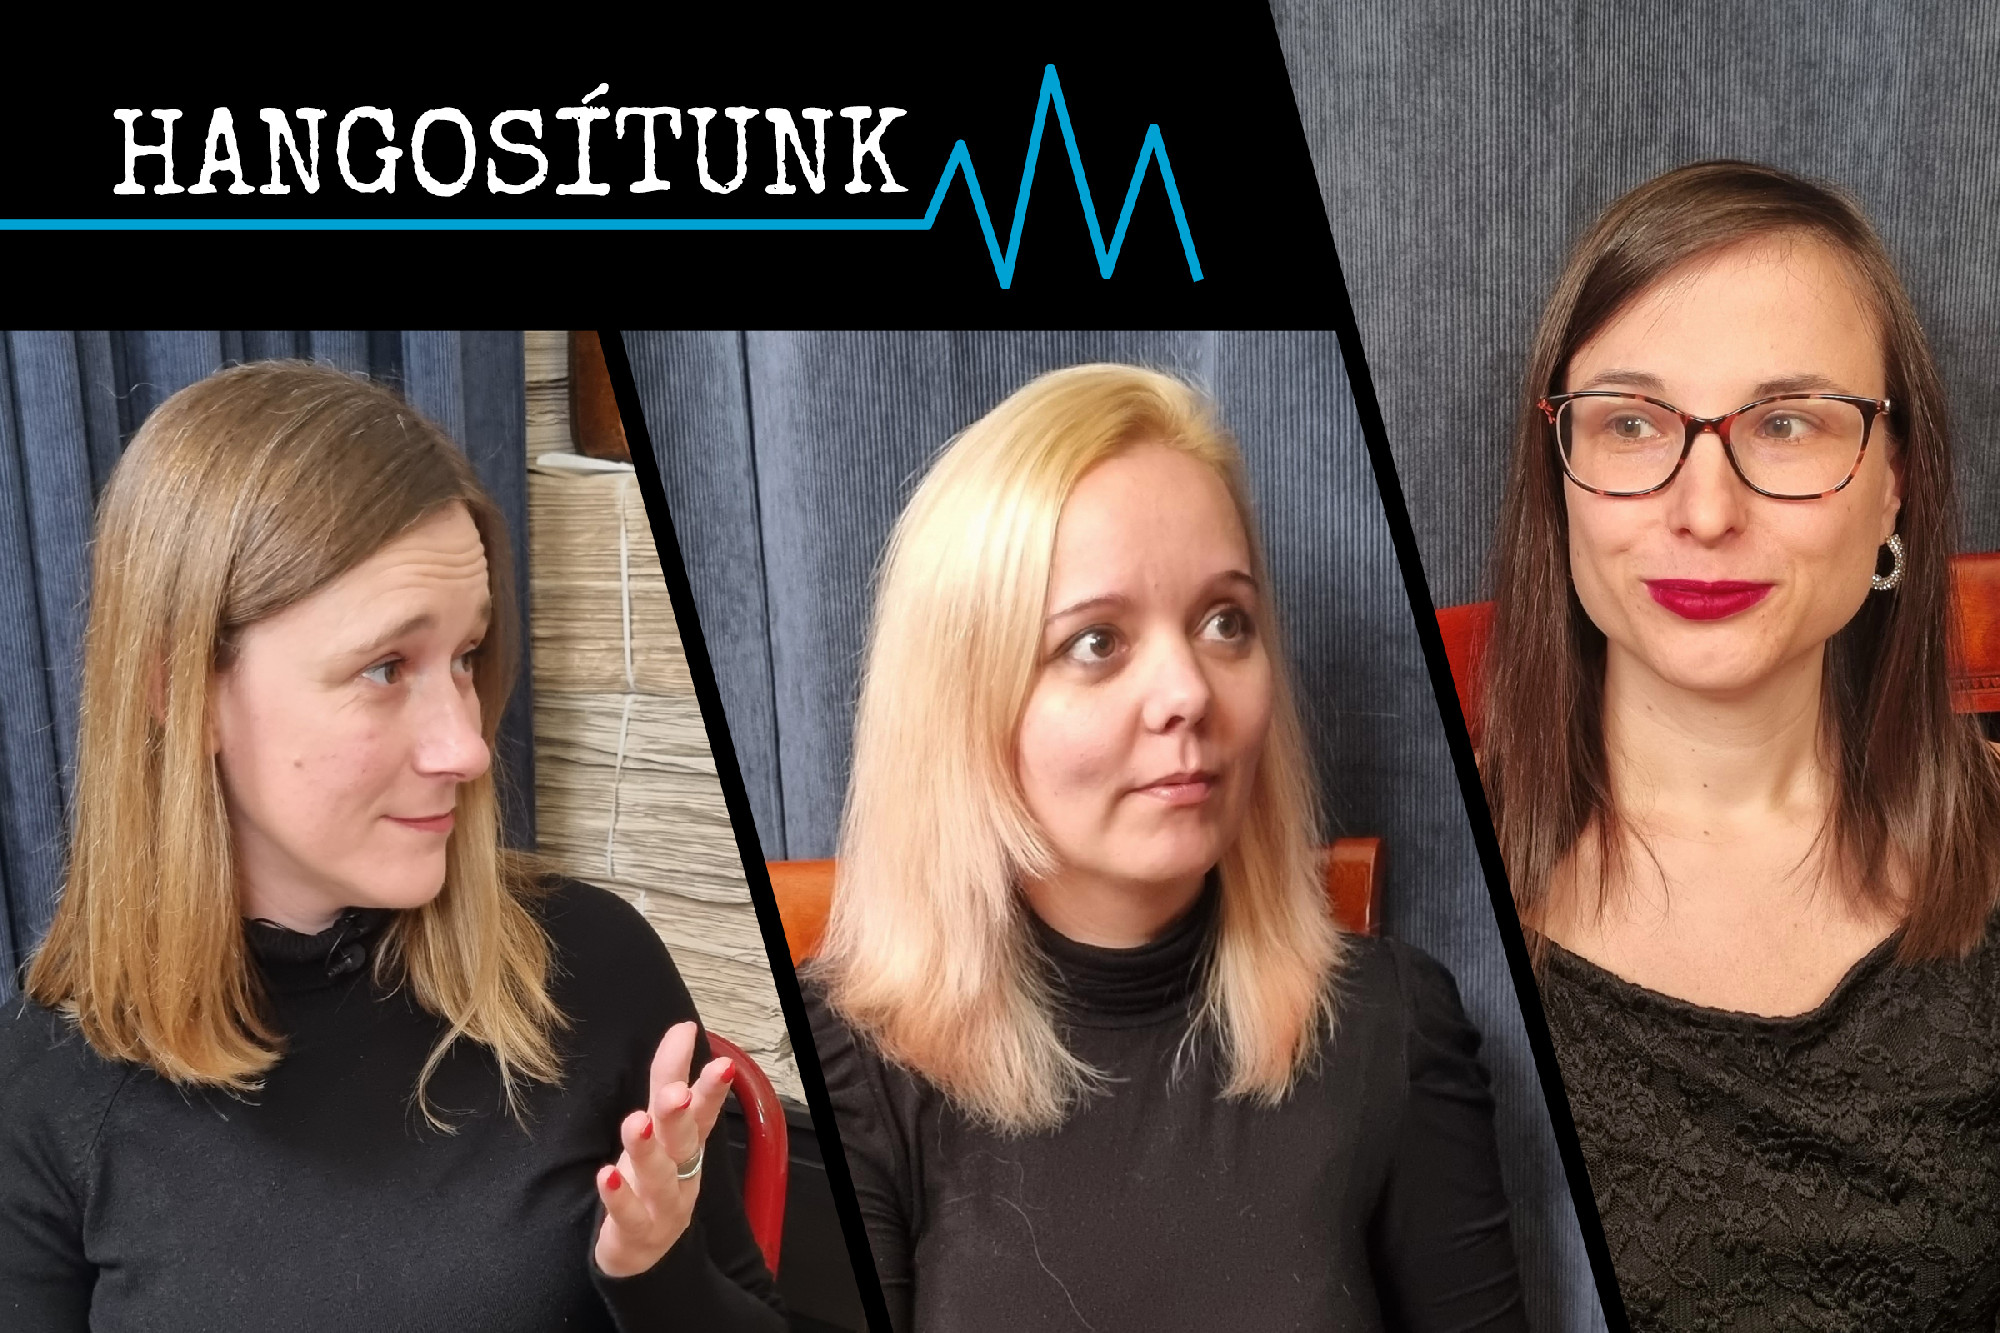 Hangosítunk – Novák Katalin döntött, de a politikai felelősség Varga Judité